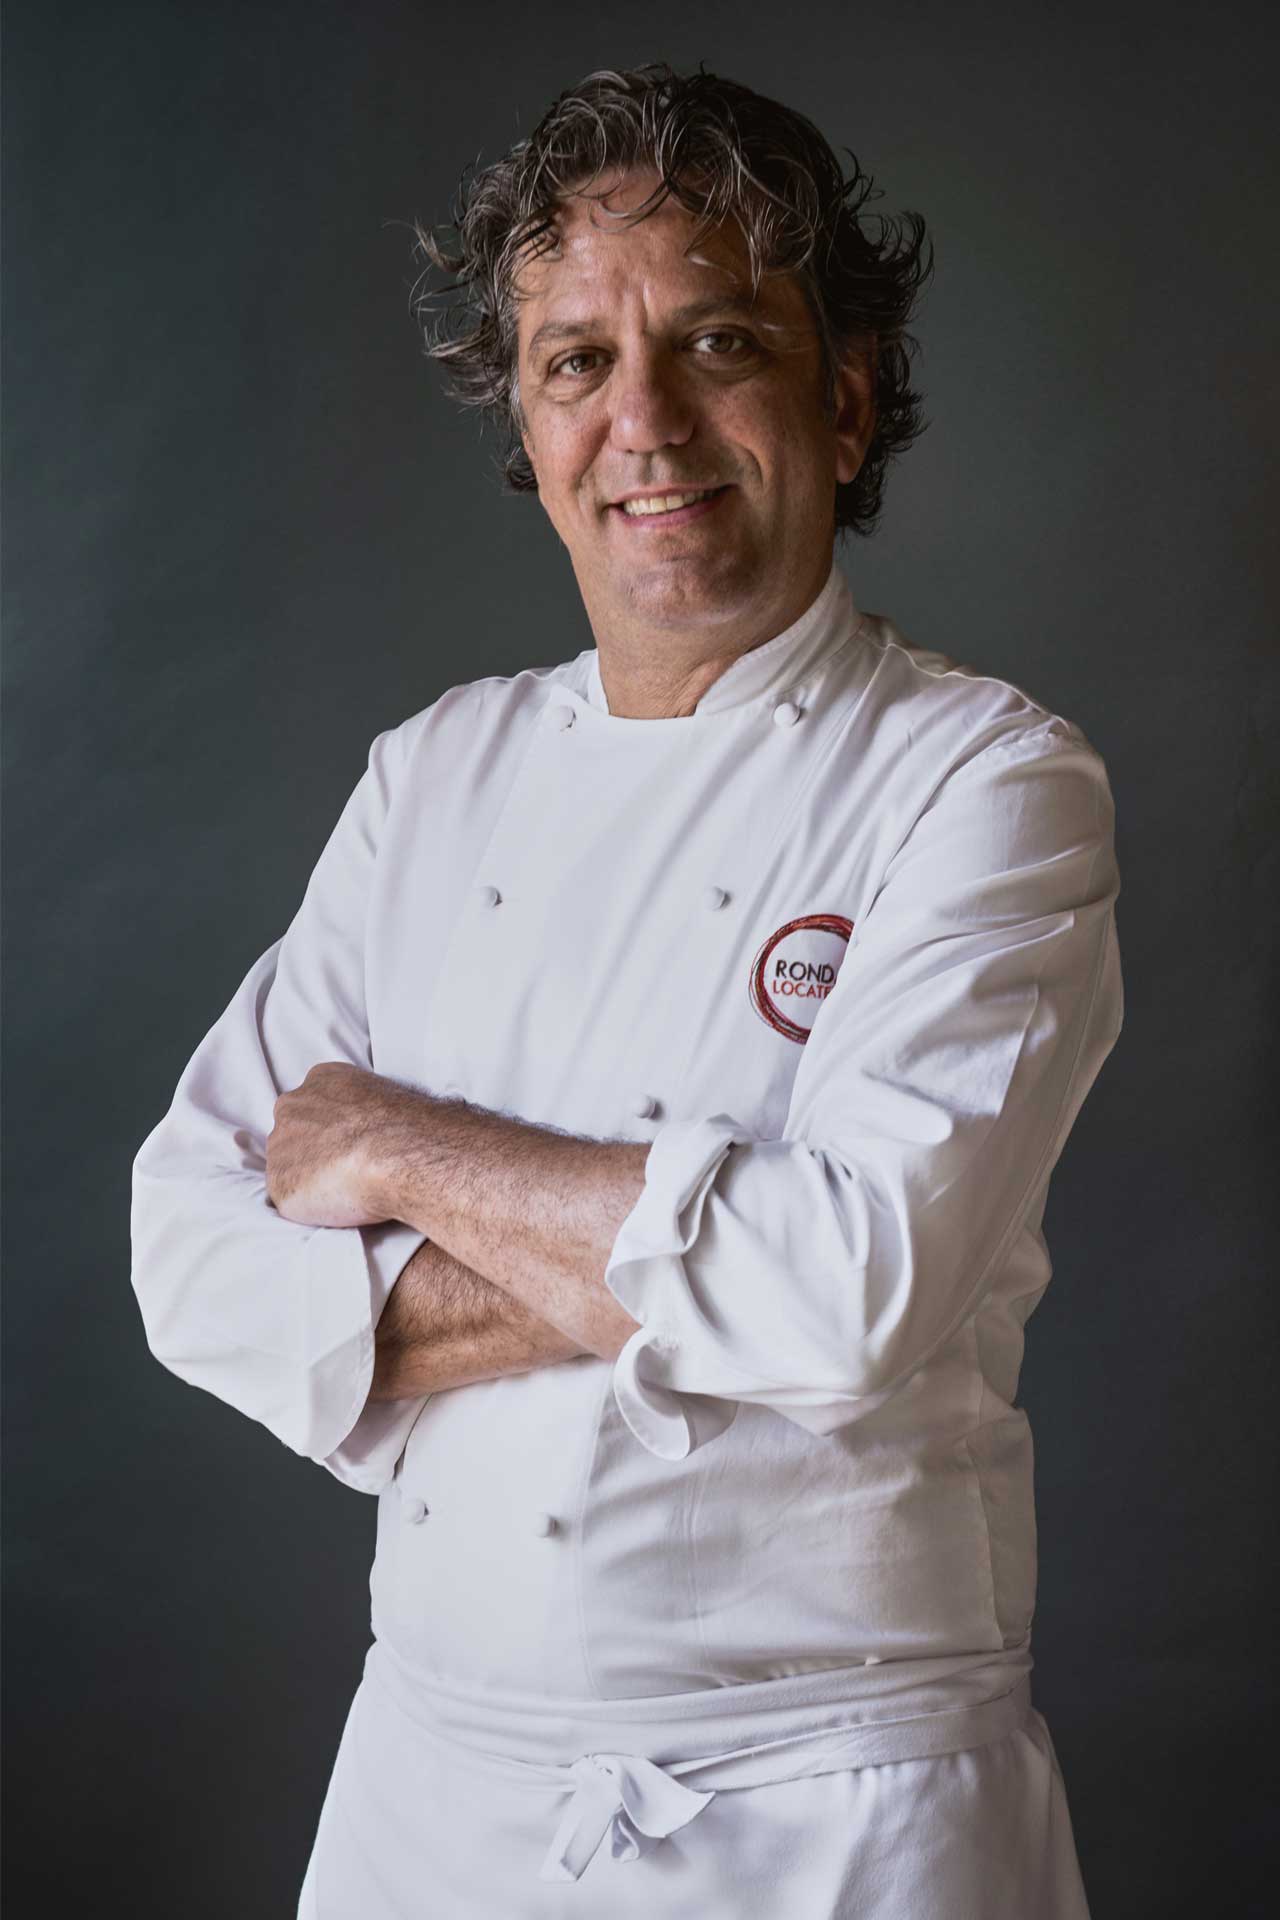 Italian chef Giorgio Locatelli has restaurants in London, Dubai and Cyprus